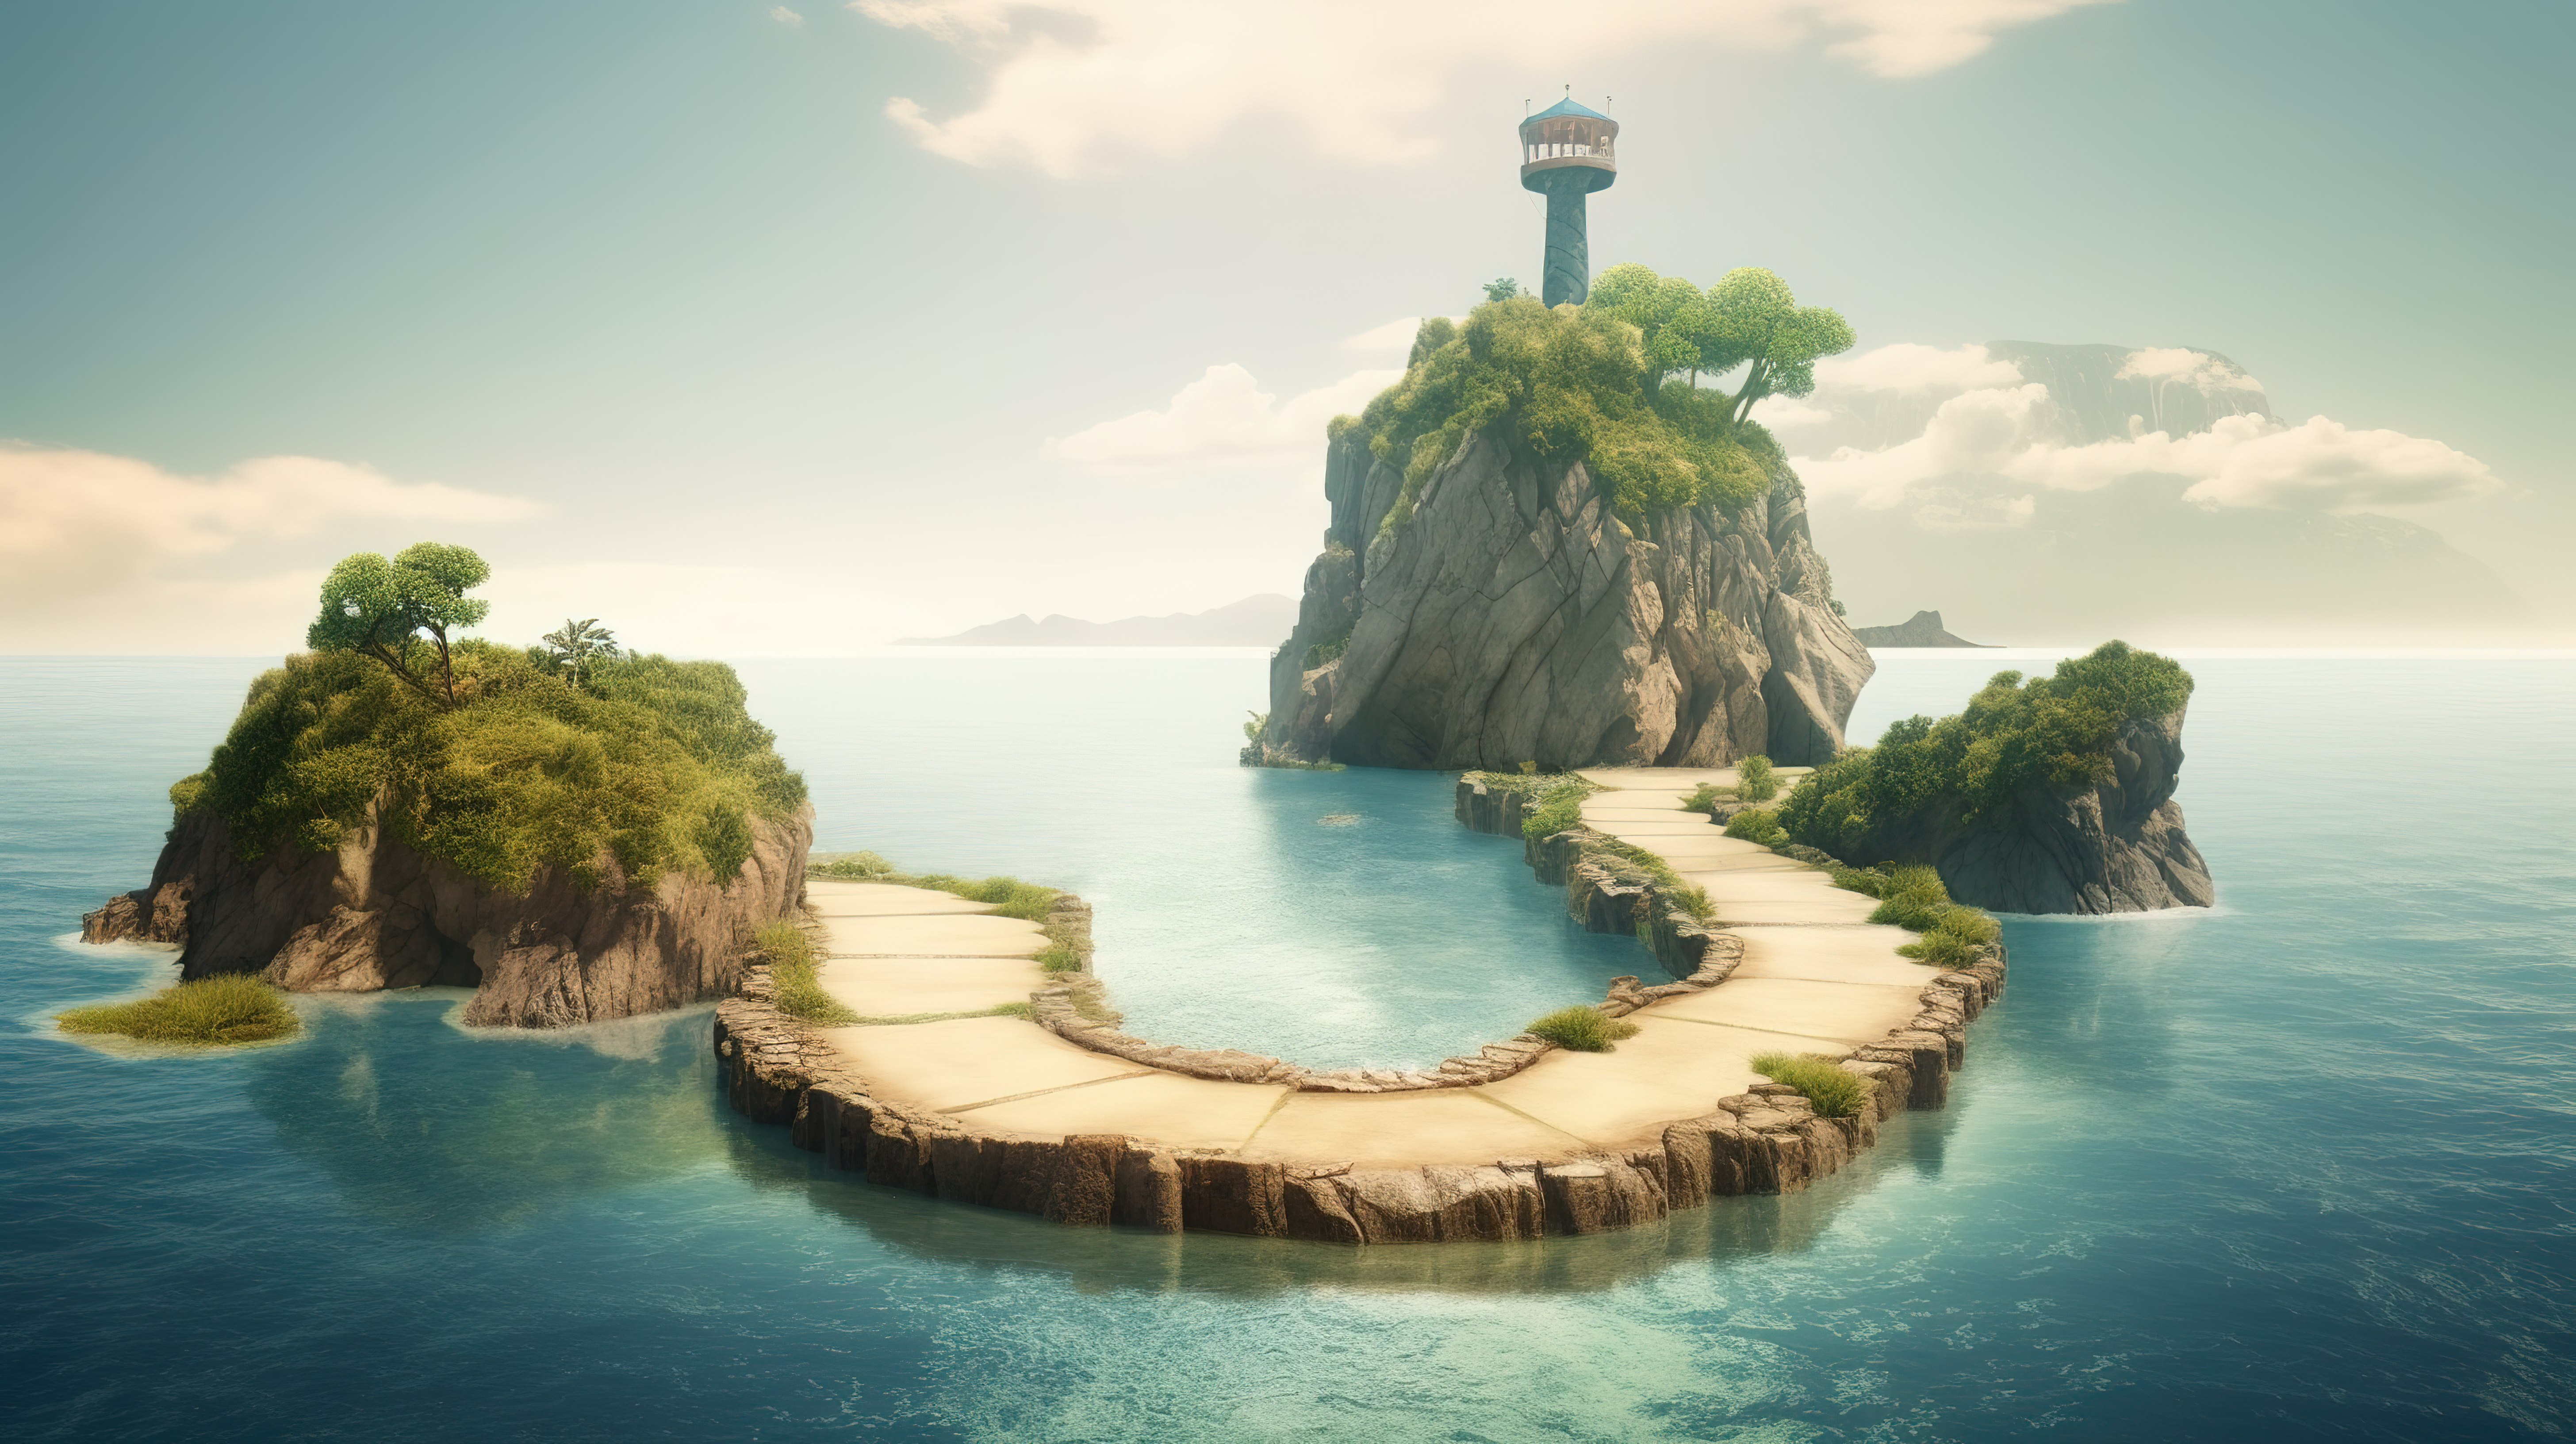 3D岛屿逃生浮路瀑布和海洋风景图片